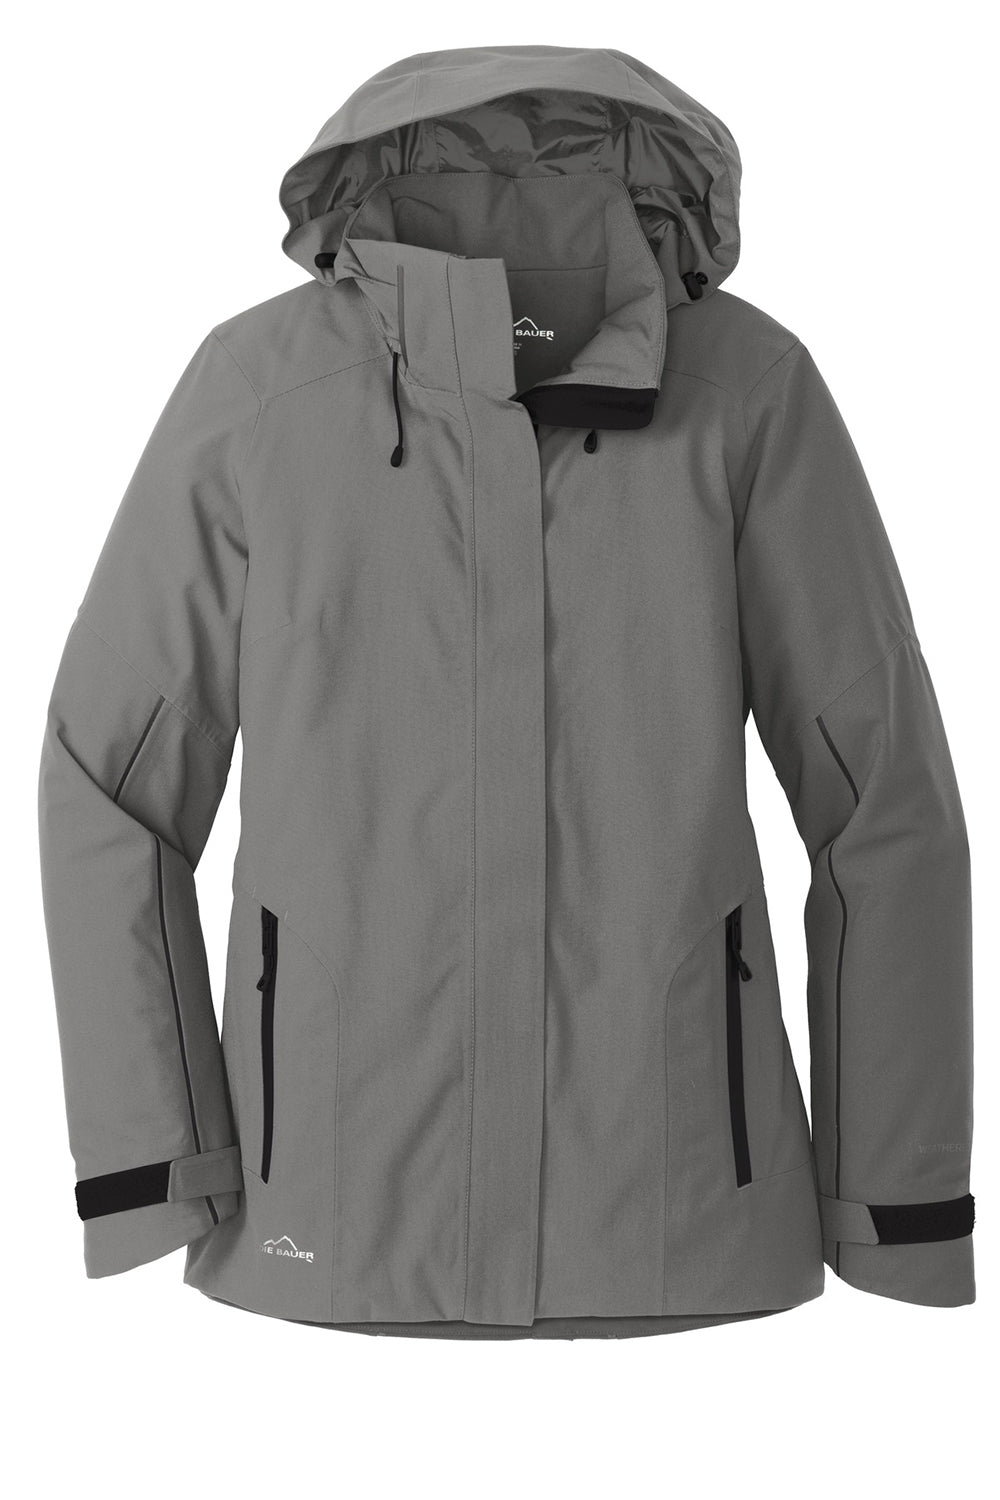 Eddie Bauer EB555 Womens WeatherEdge Plus Waterproof Full Zip Hooded Jacket Metal Grey Flat Front